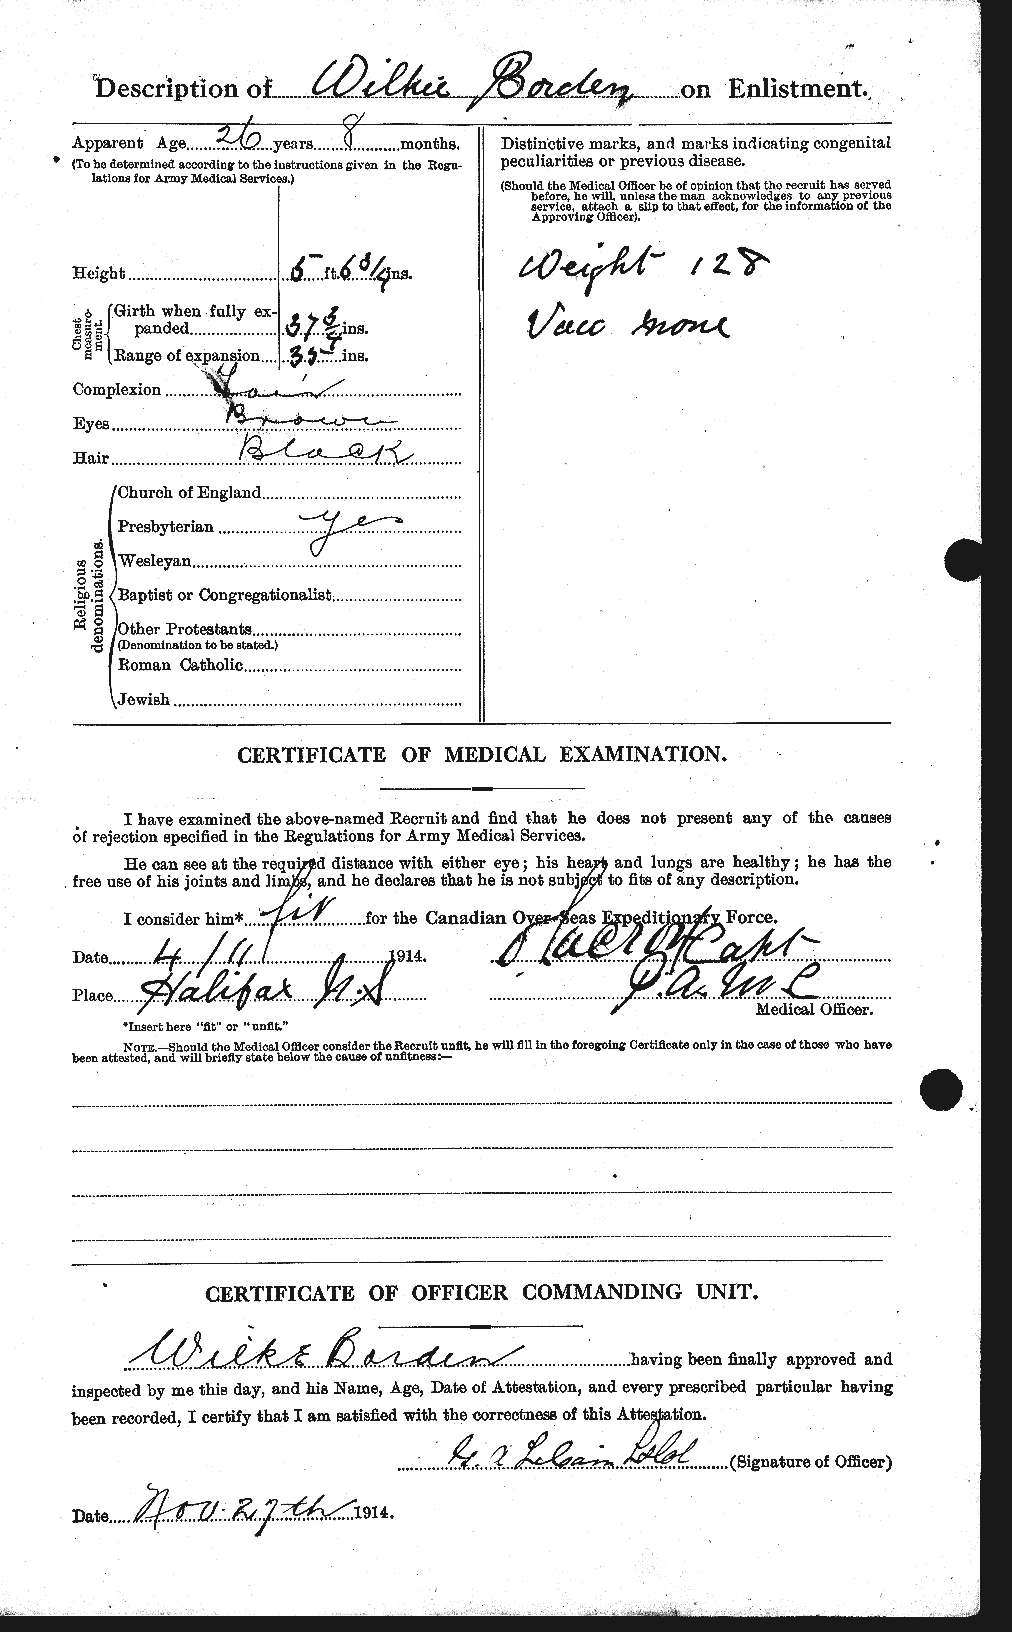 Dossiers du Personnel de la Première Guerre mondiale - CEC 252320b